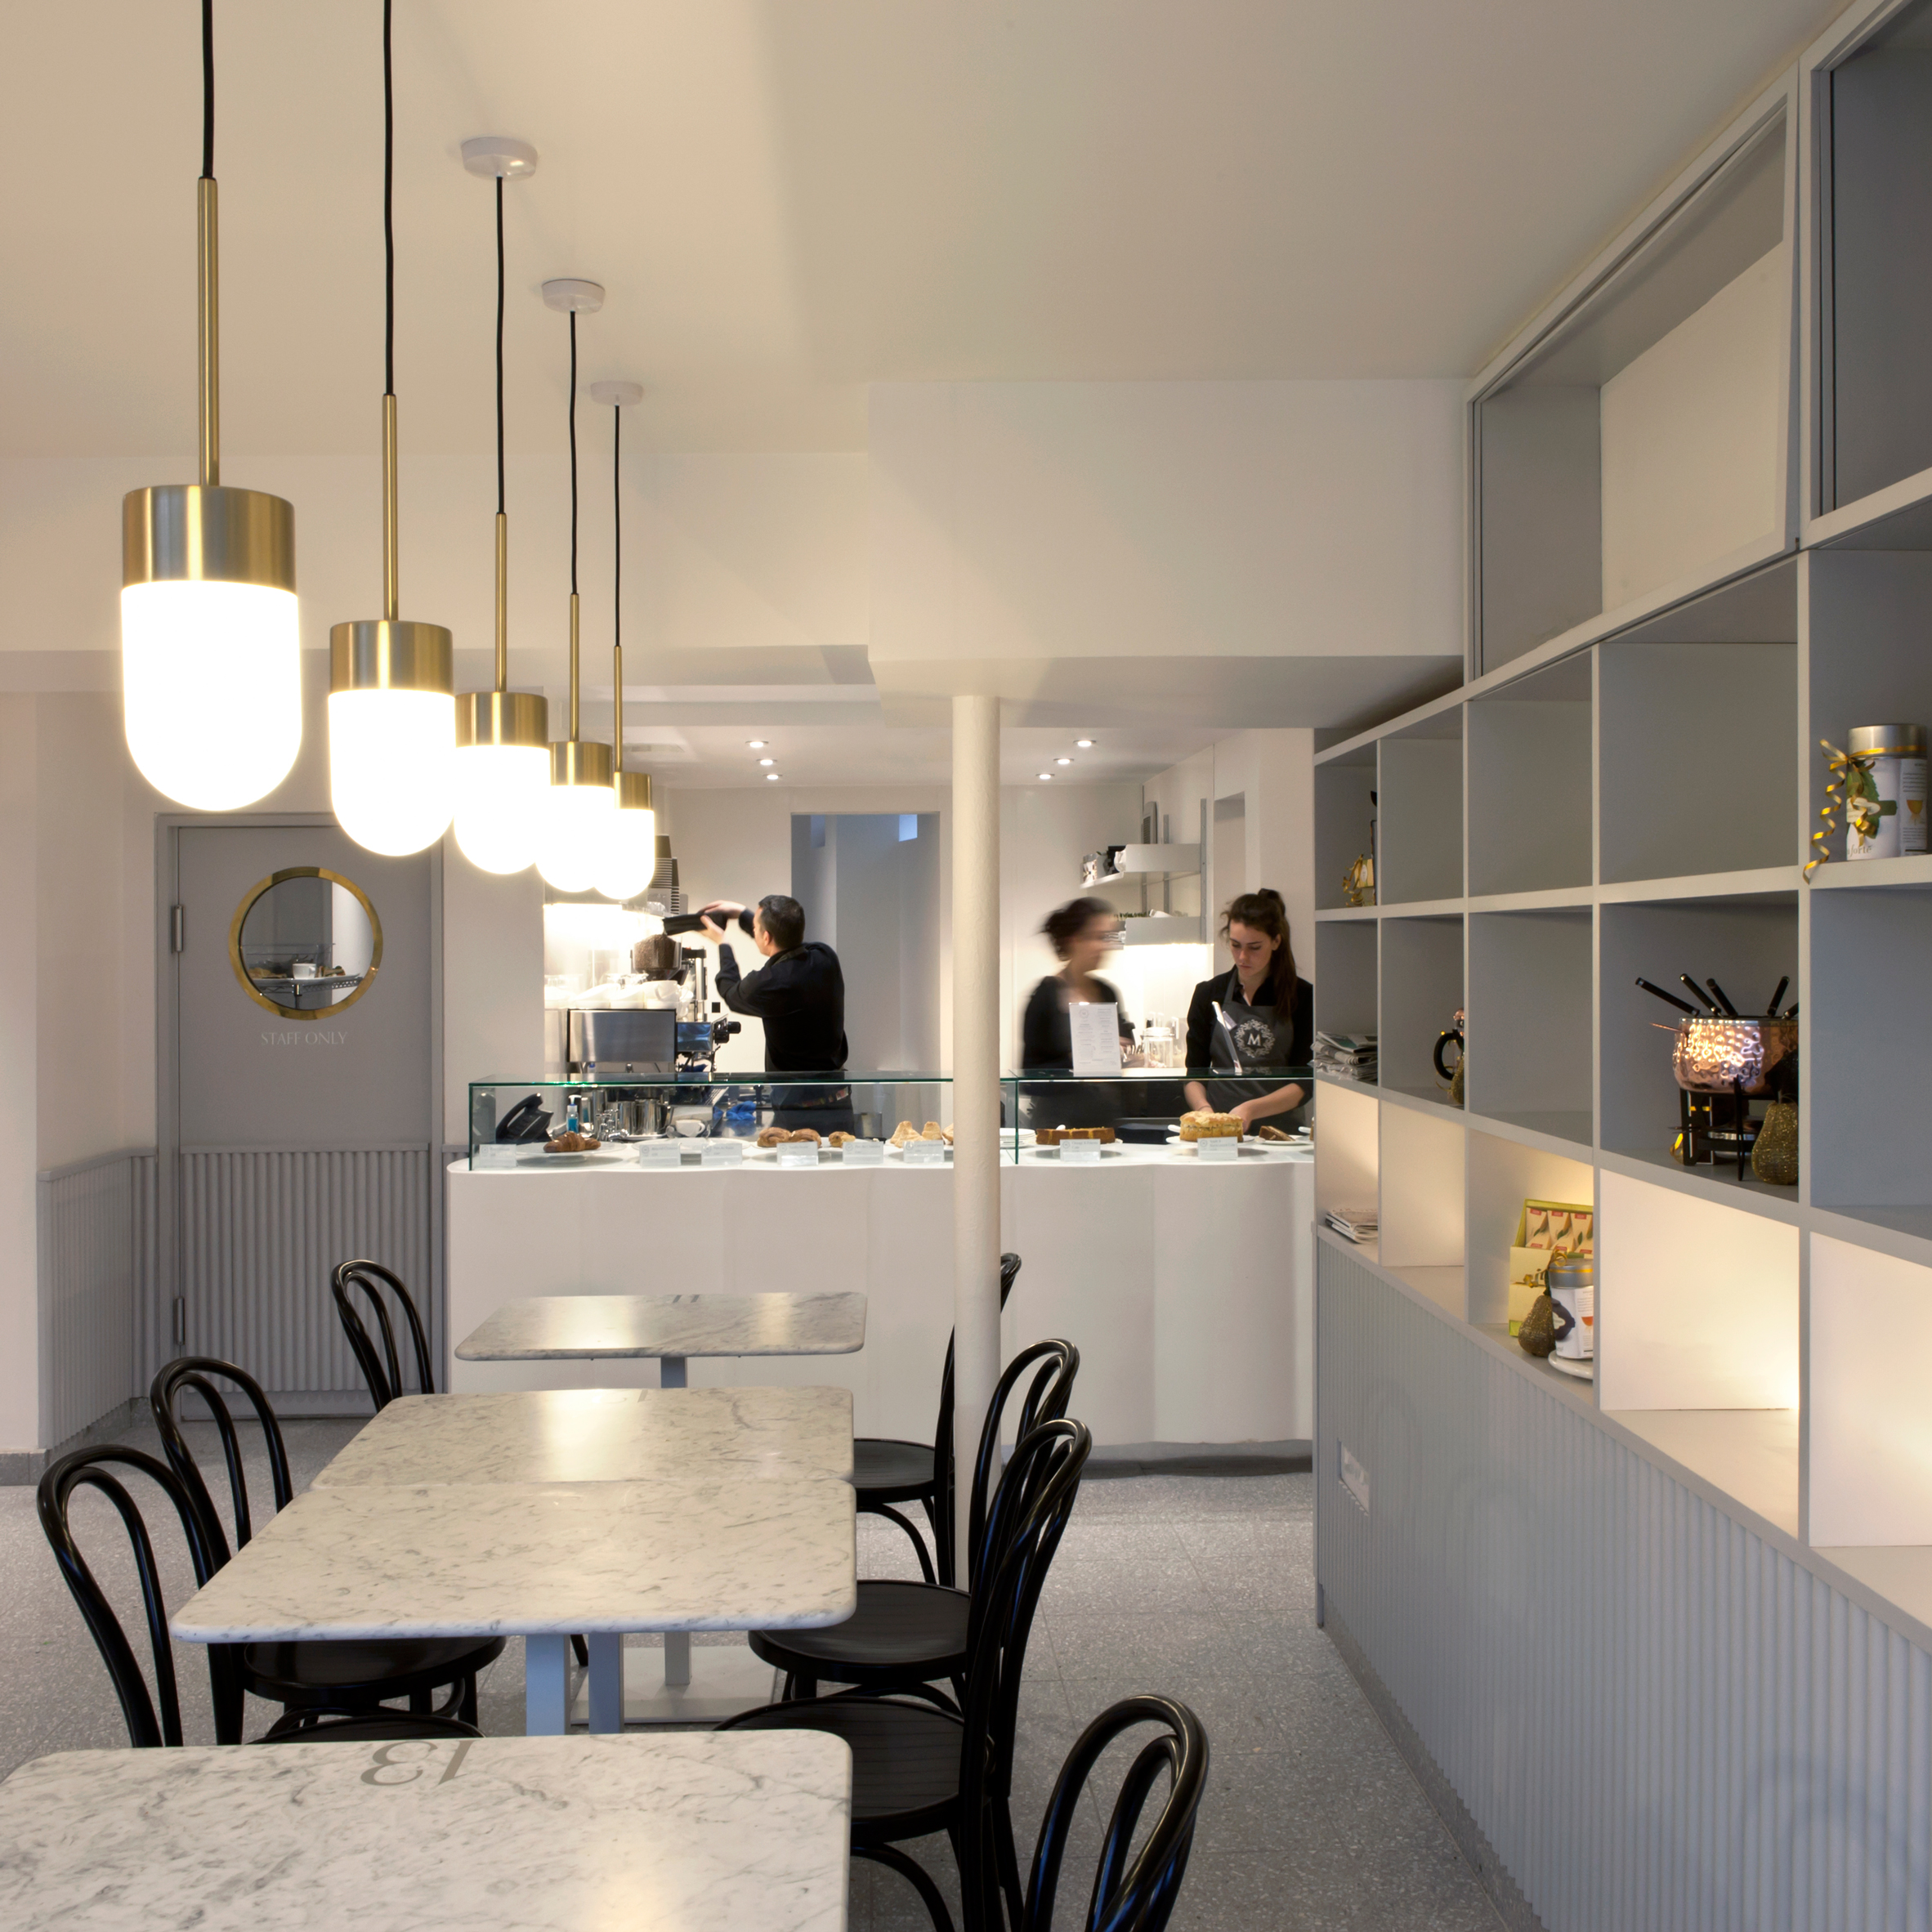 Cafe by vPPR Architects